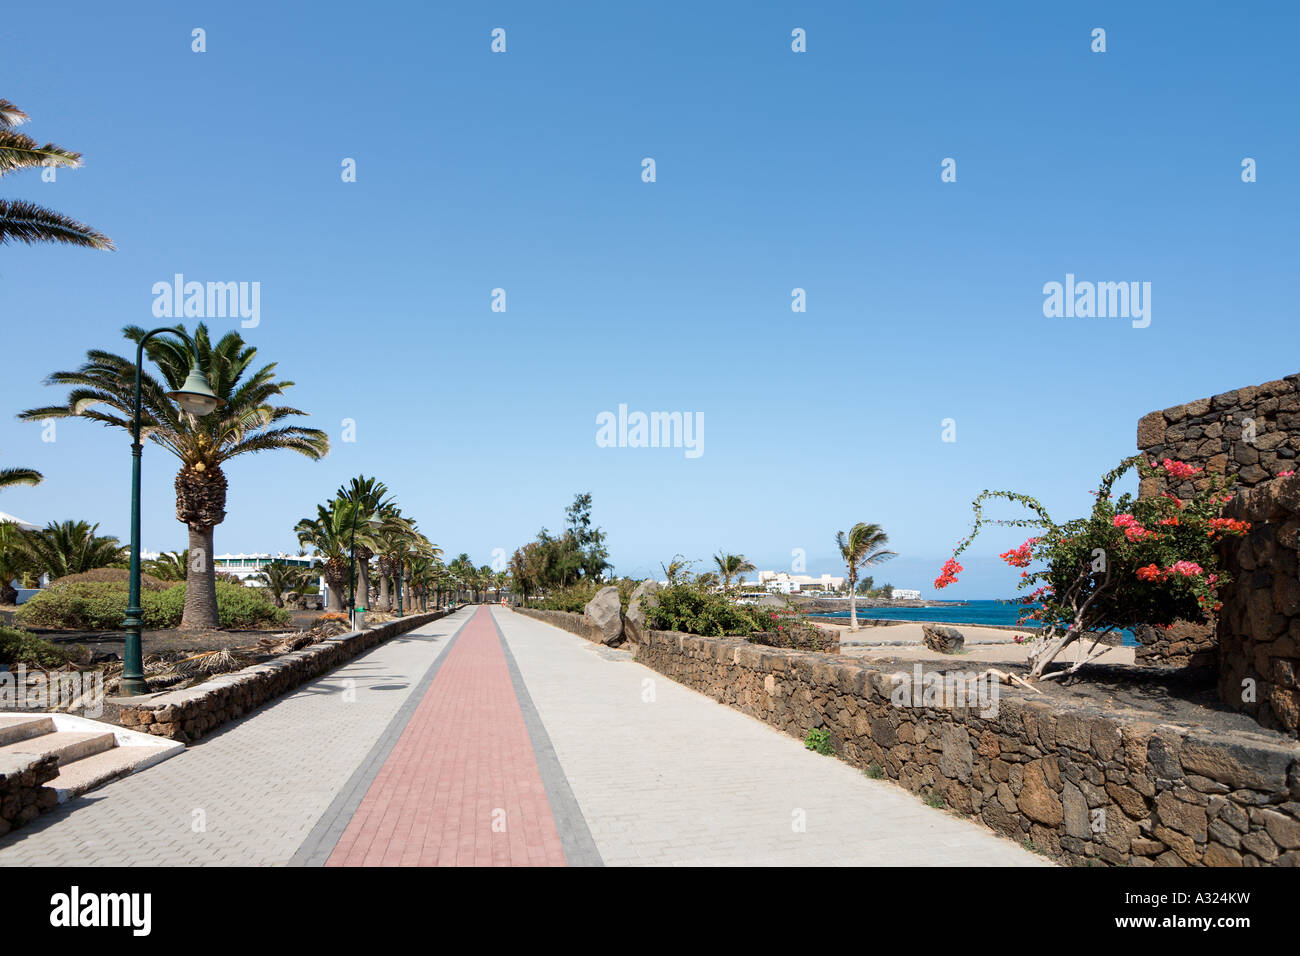 Promenade und Strand, Playa Bastian, Costa Teguise, Lanzarote, Kanarische Inseln, Spanien Stockfoto